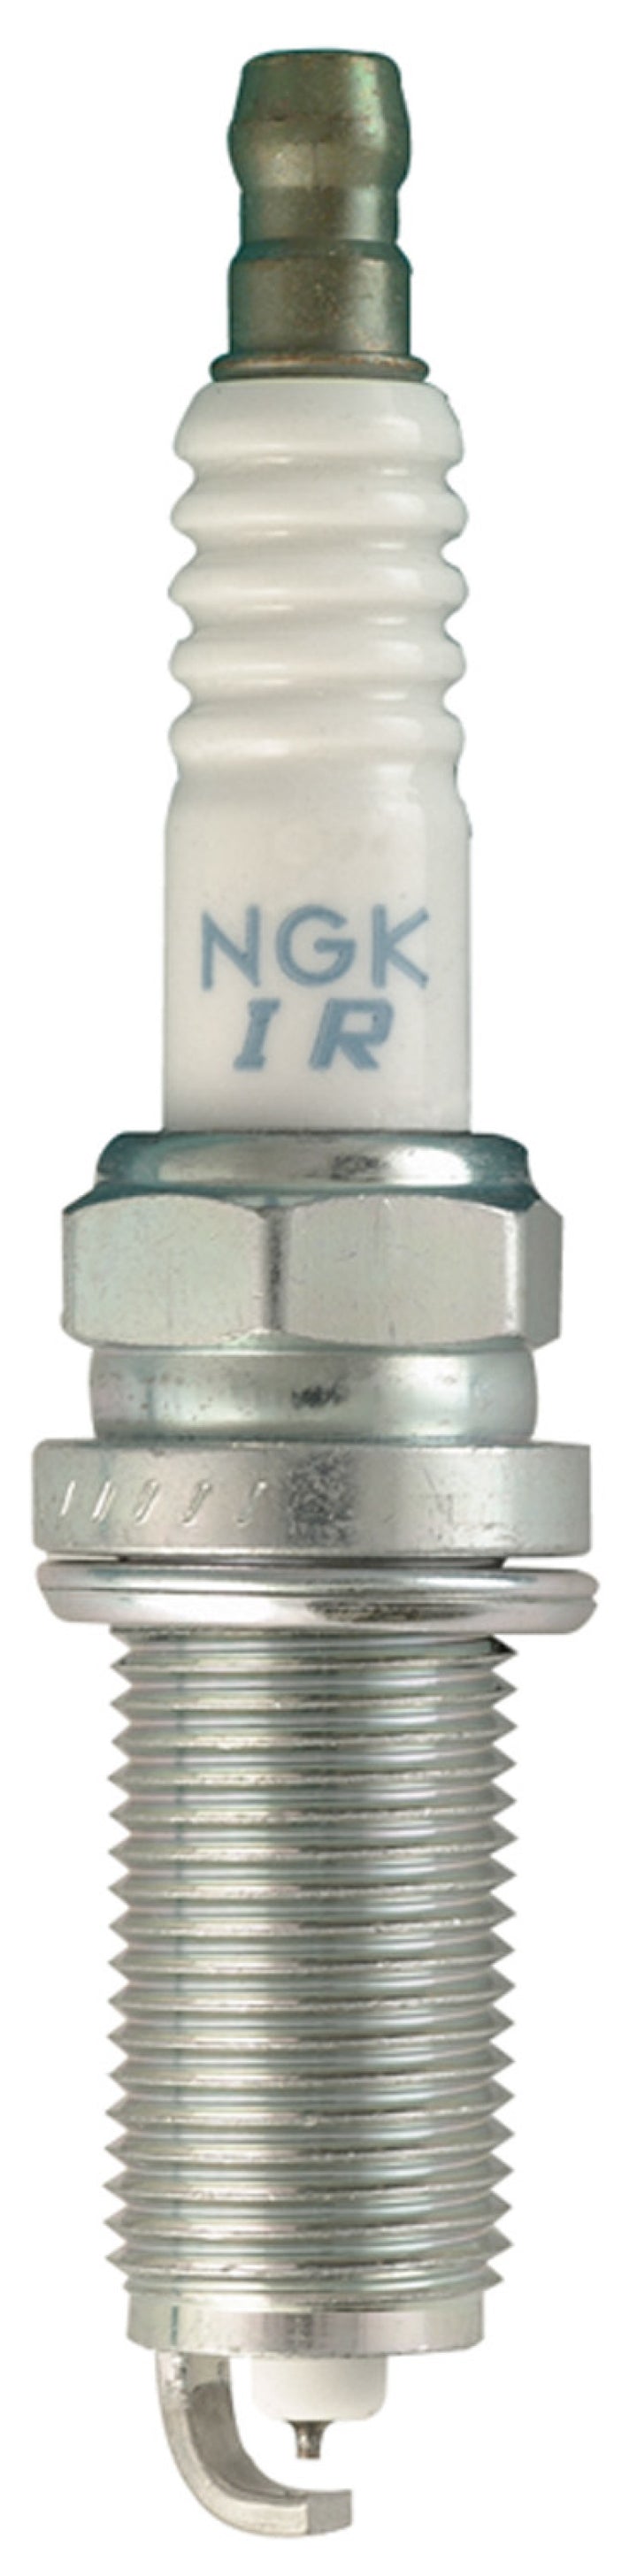 NGK Laser Iridium Spark Plug Box of 4 (ILFR6T11).